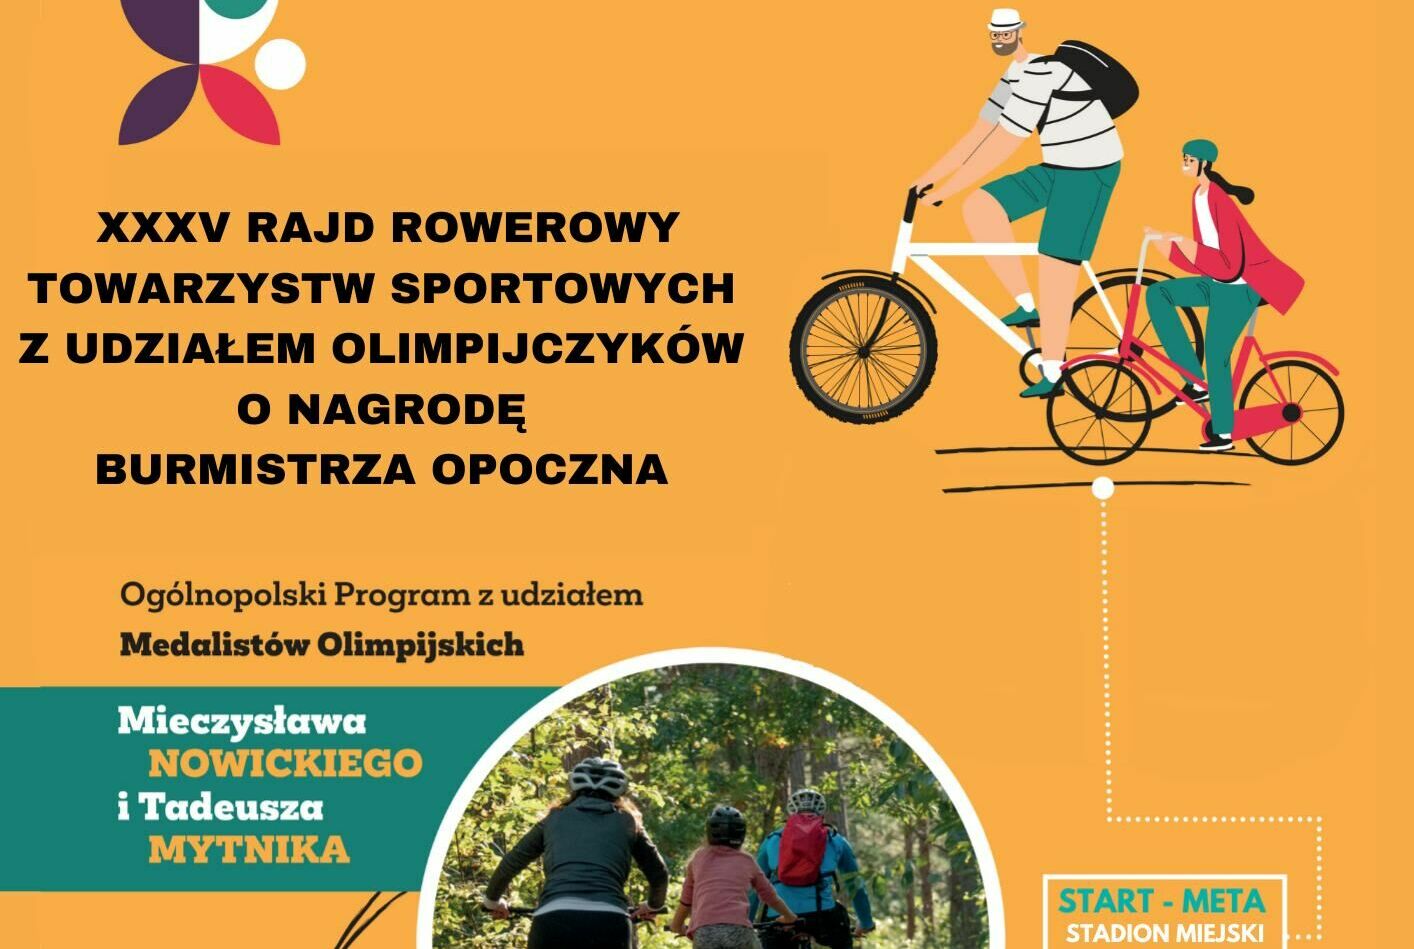 XXXV Rajd Rowerowy Towarzystw Sportowych z udziałem olimpijczyków.